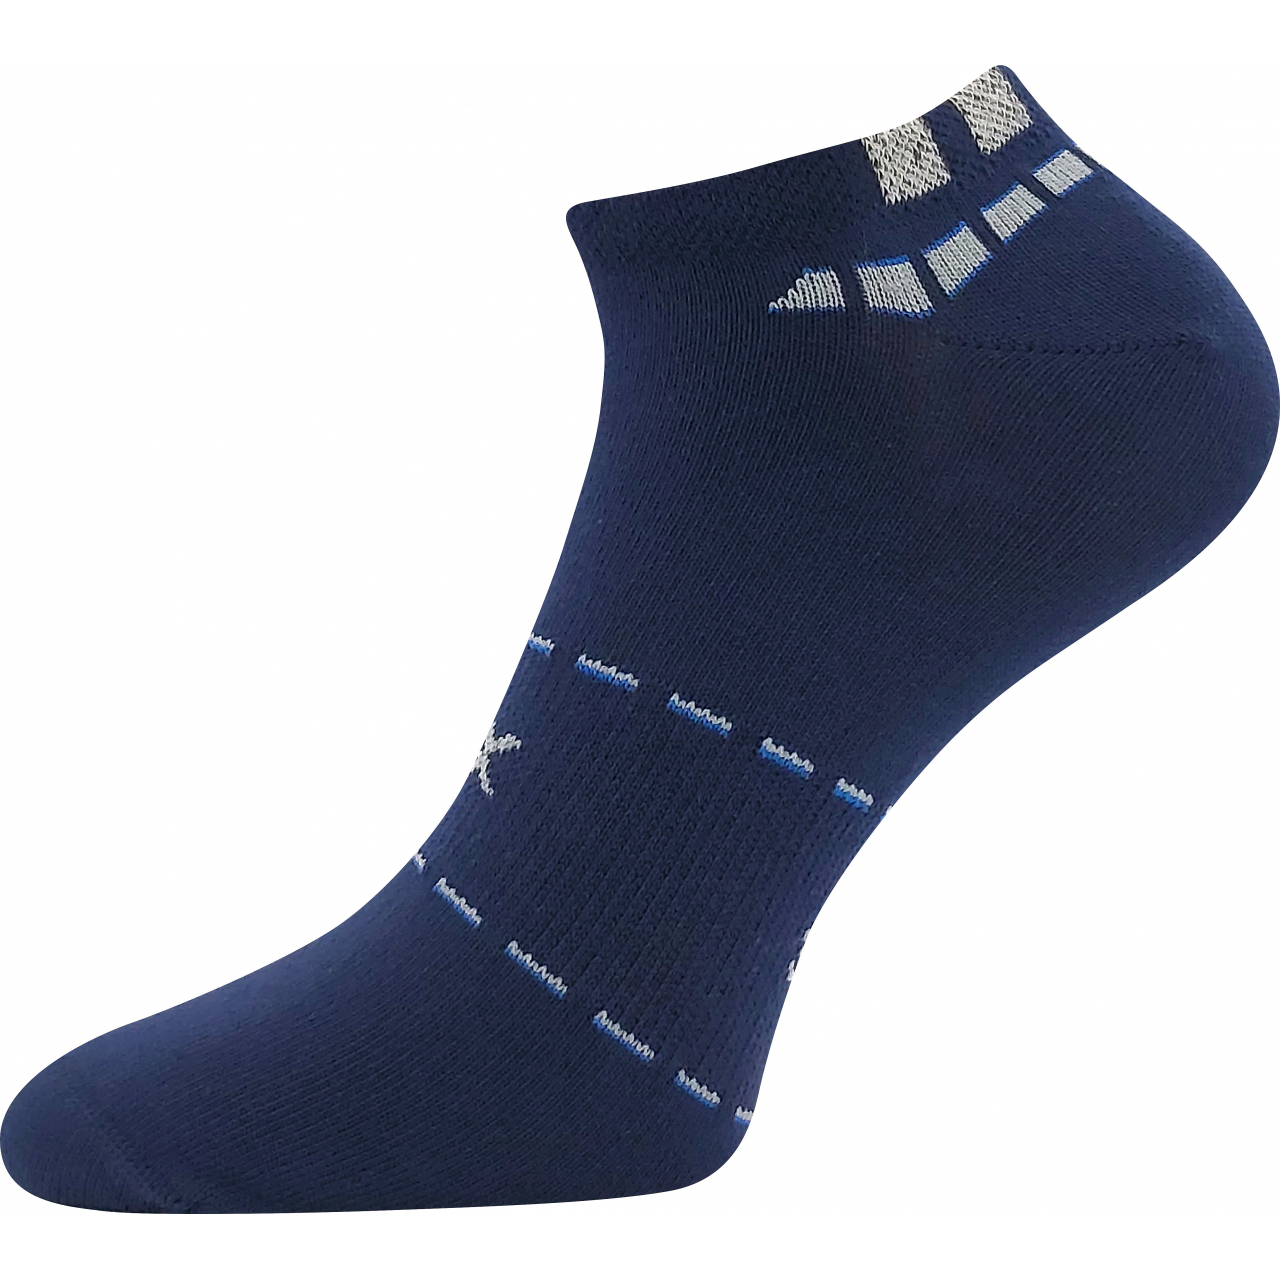 Ponožky pánské sportovní Voxx Rex 16 - tmavě modré, 39-42